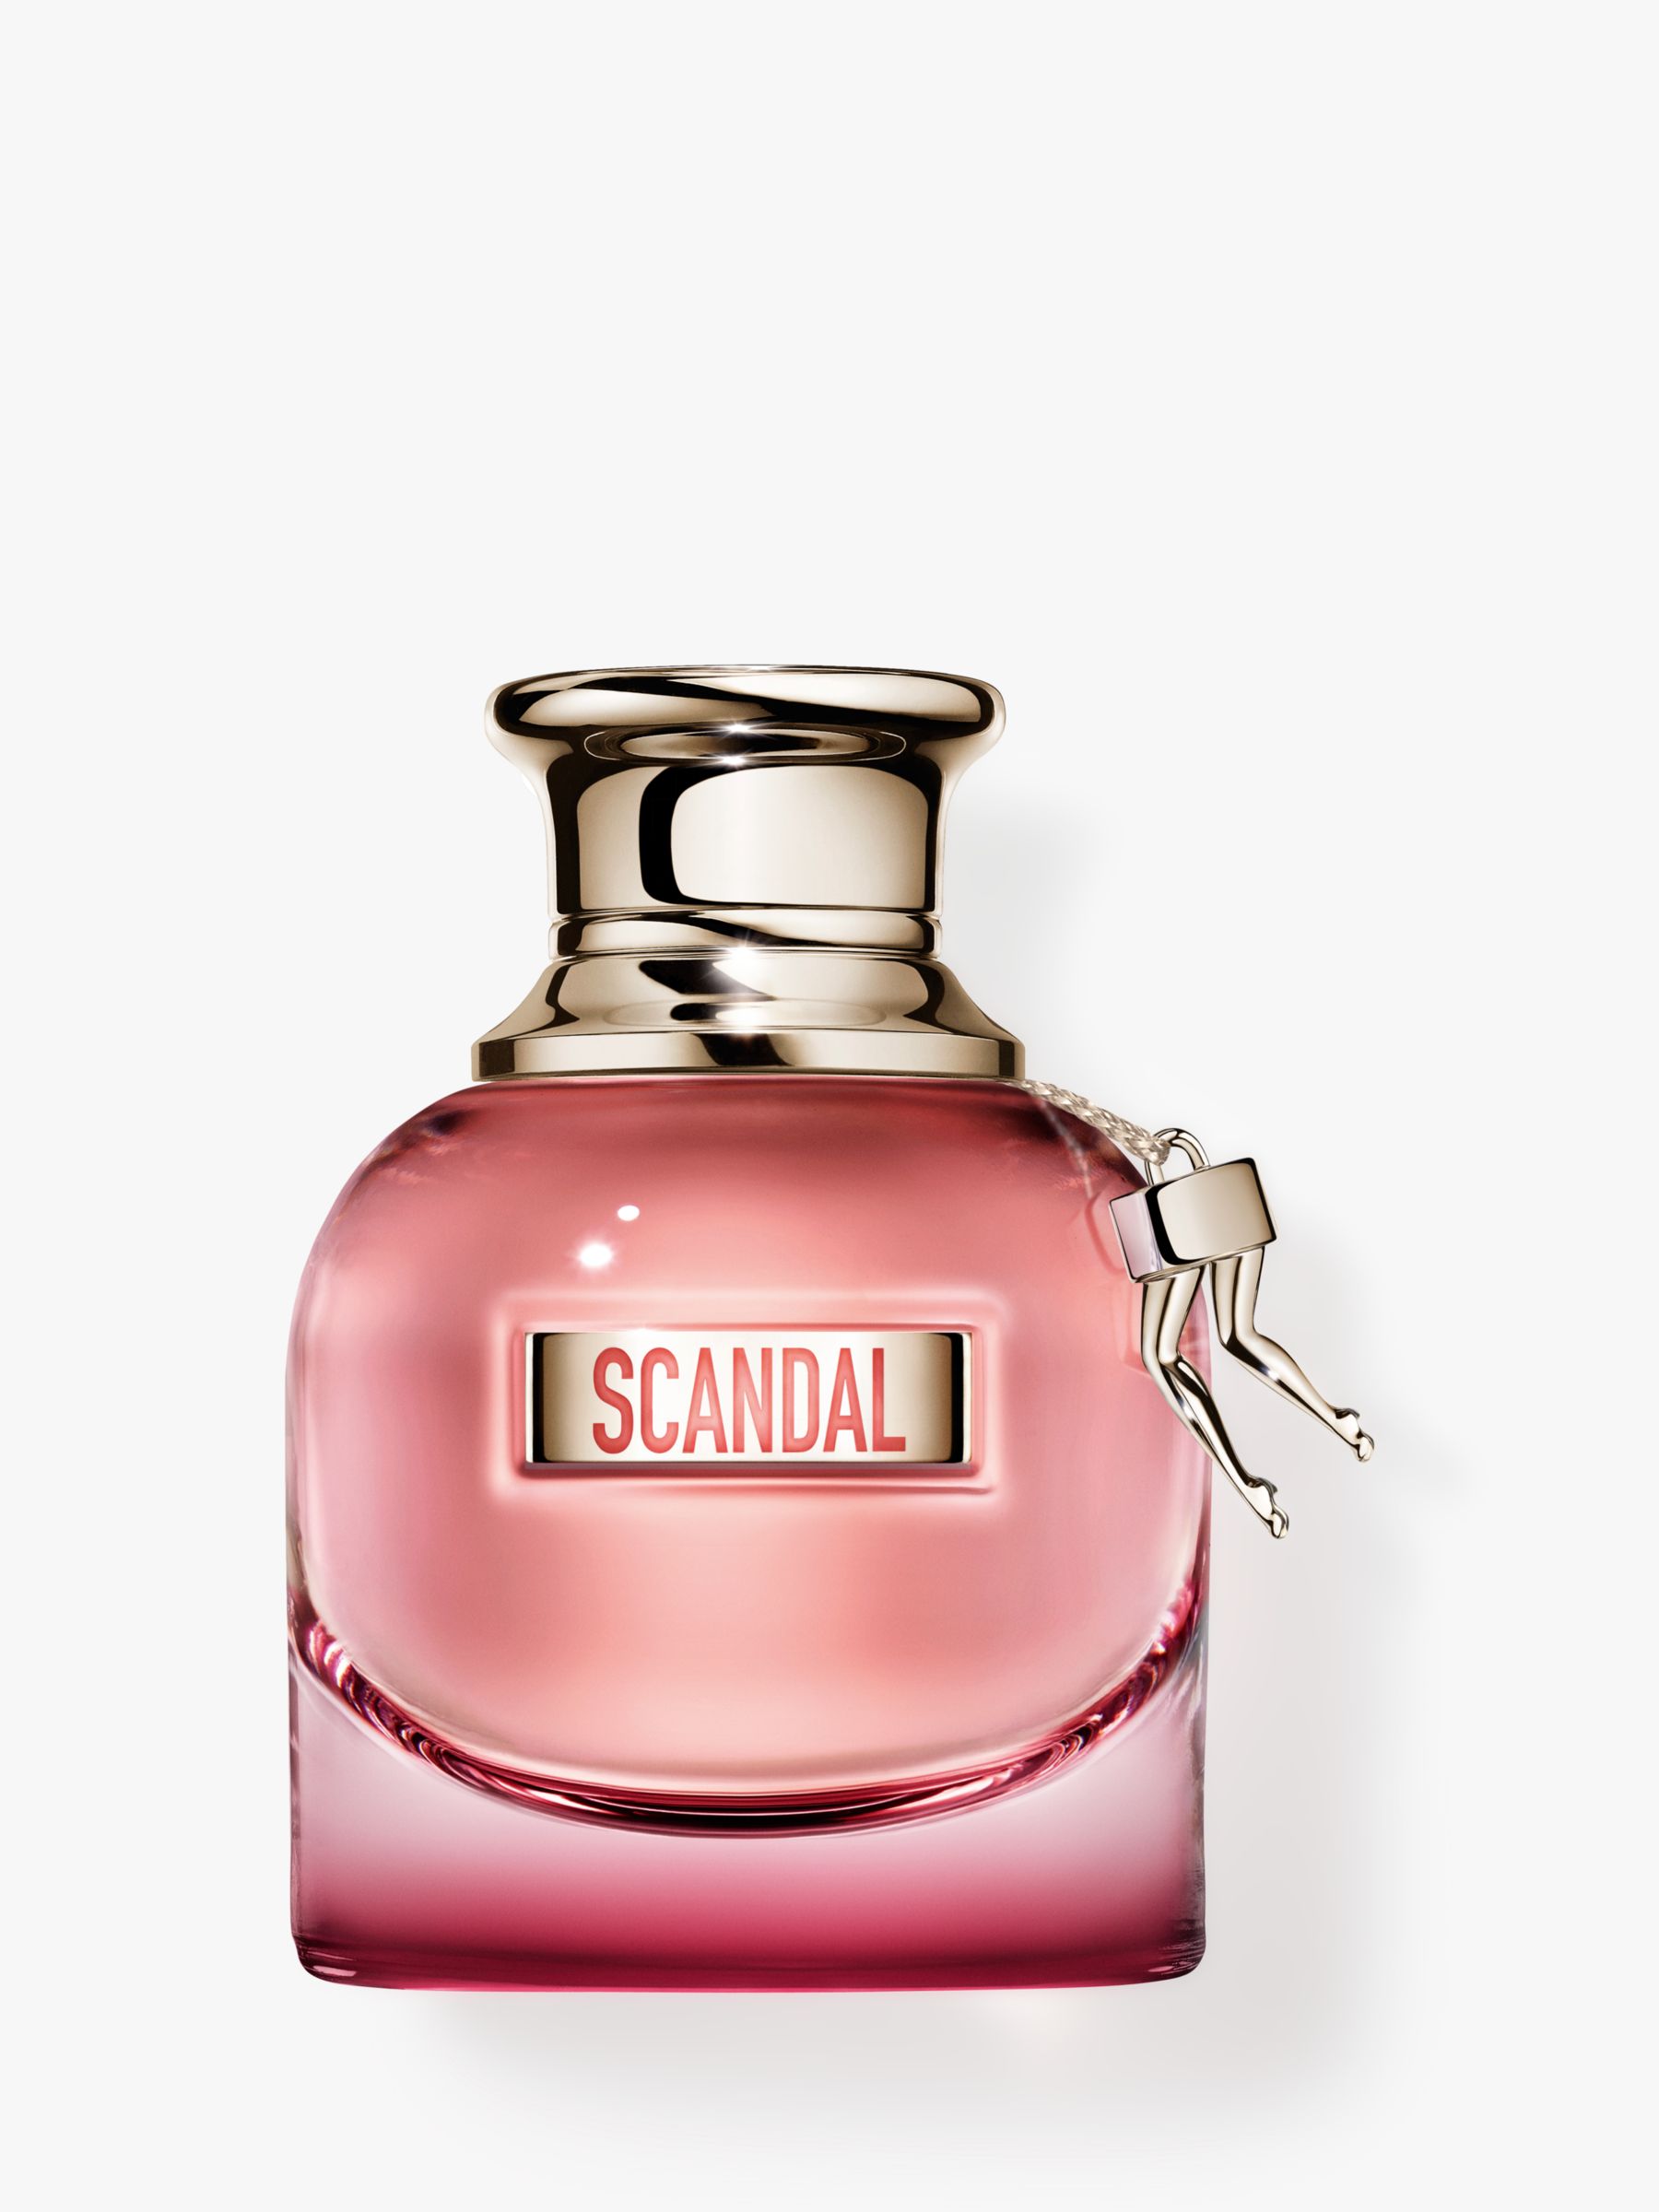 Jean Paul Gaultier Scandal By Night Eau de Parfum at John Lewis & Partners